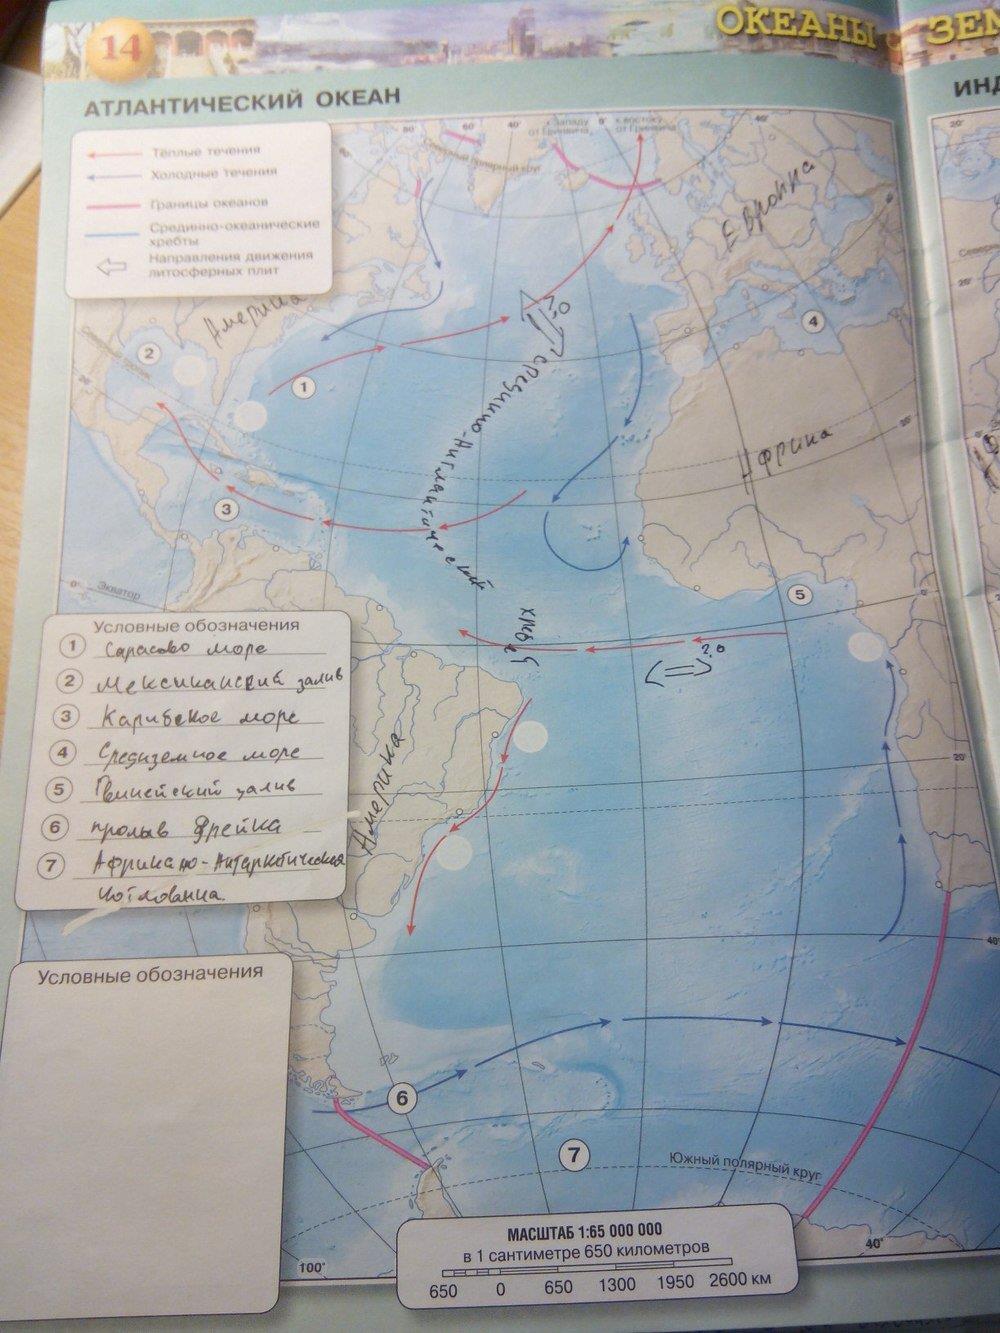 Контурная карта 7 класс стр 15. Атлантический океан 7 класс география контурная карта. Атлантический океан контурная карта 7 класс готовая стр 14 Котляр. Контурная карта по географии 7 класс сфера стр 17 индийский океан. География 7 класс контурные карты гдз Атлантический океан.